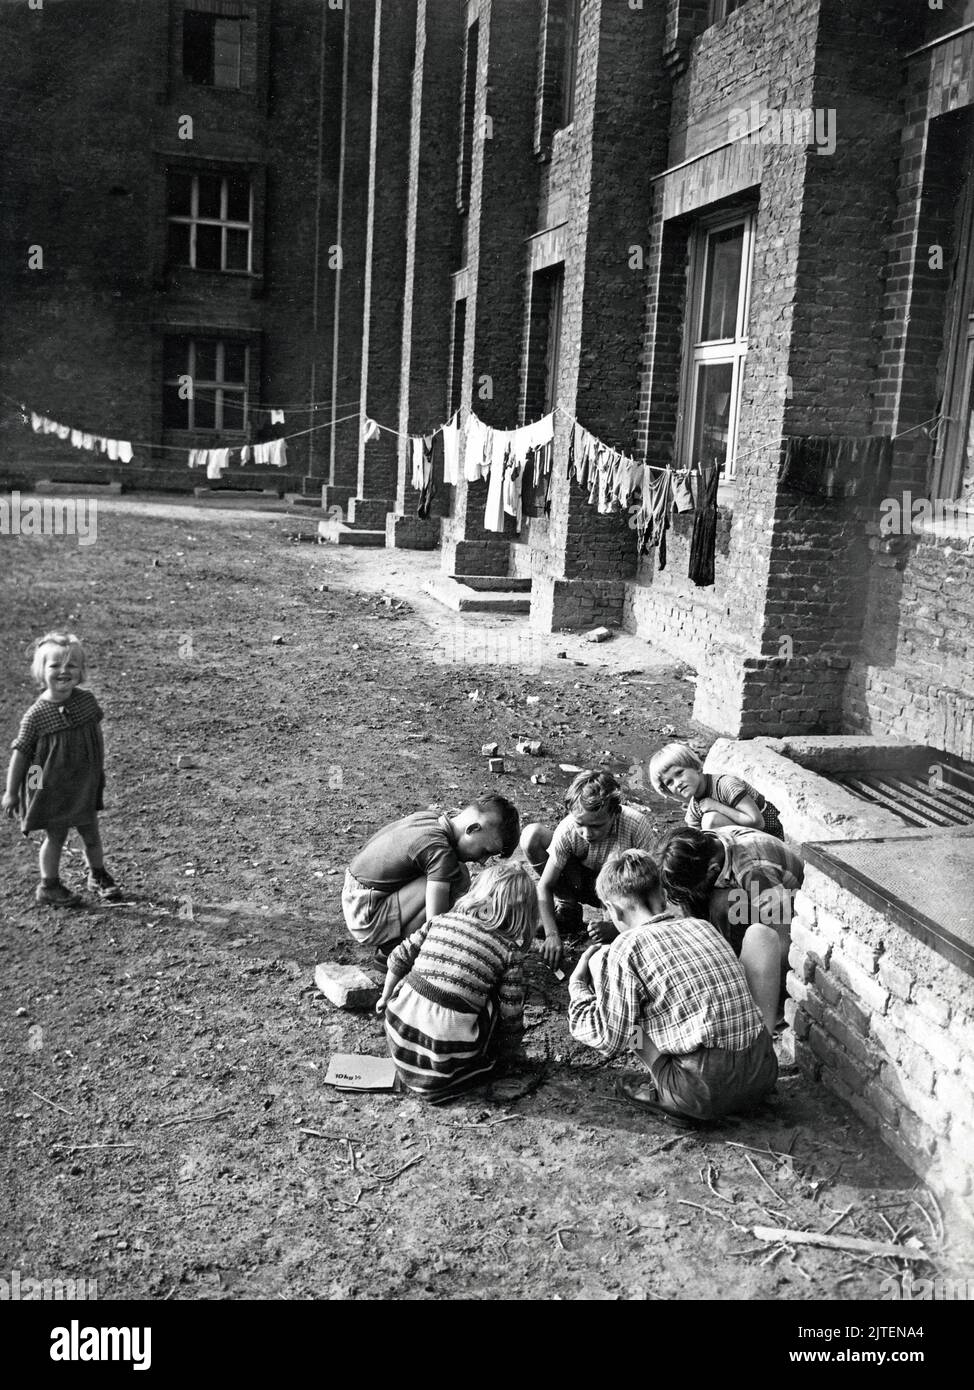 Original-Bildunterschrift: Flüchtlingsschicksale - Das Lager ist jetzt ihre Heimat geworden, Berlin, Deutschland 1960er Jahre. Stock Photo